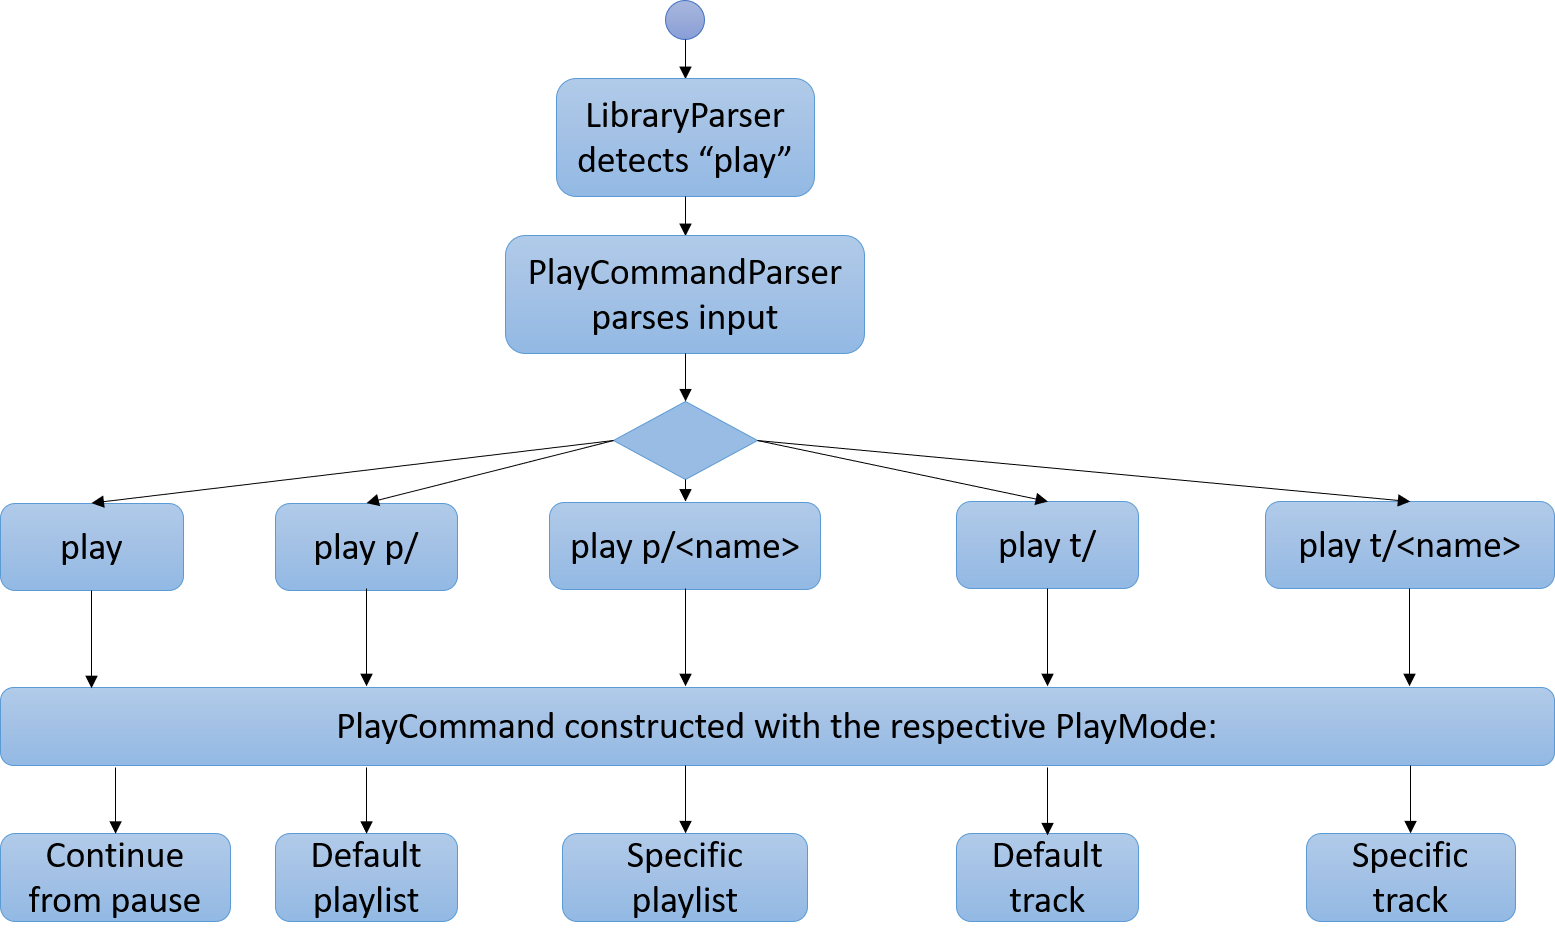 PlayCommandActivityDiagram